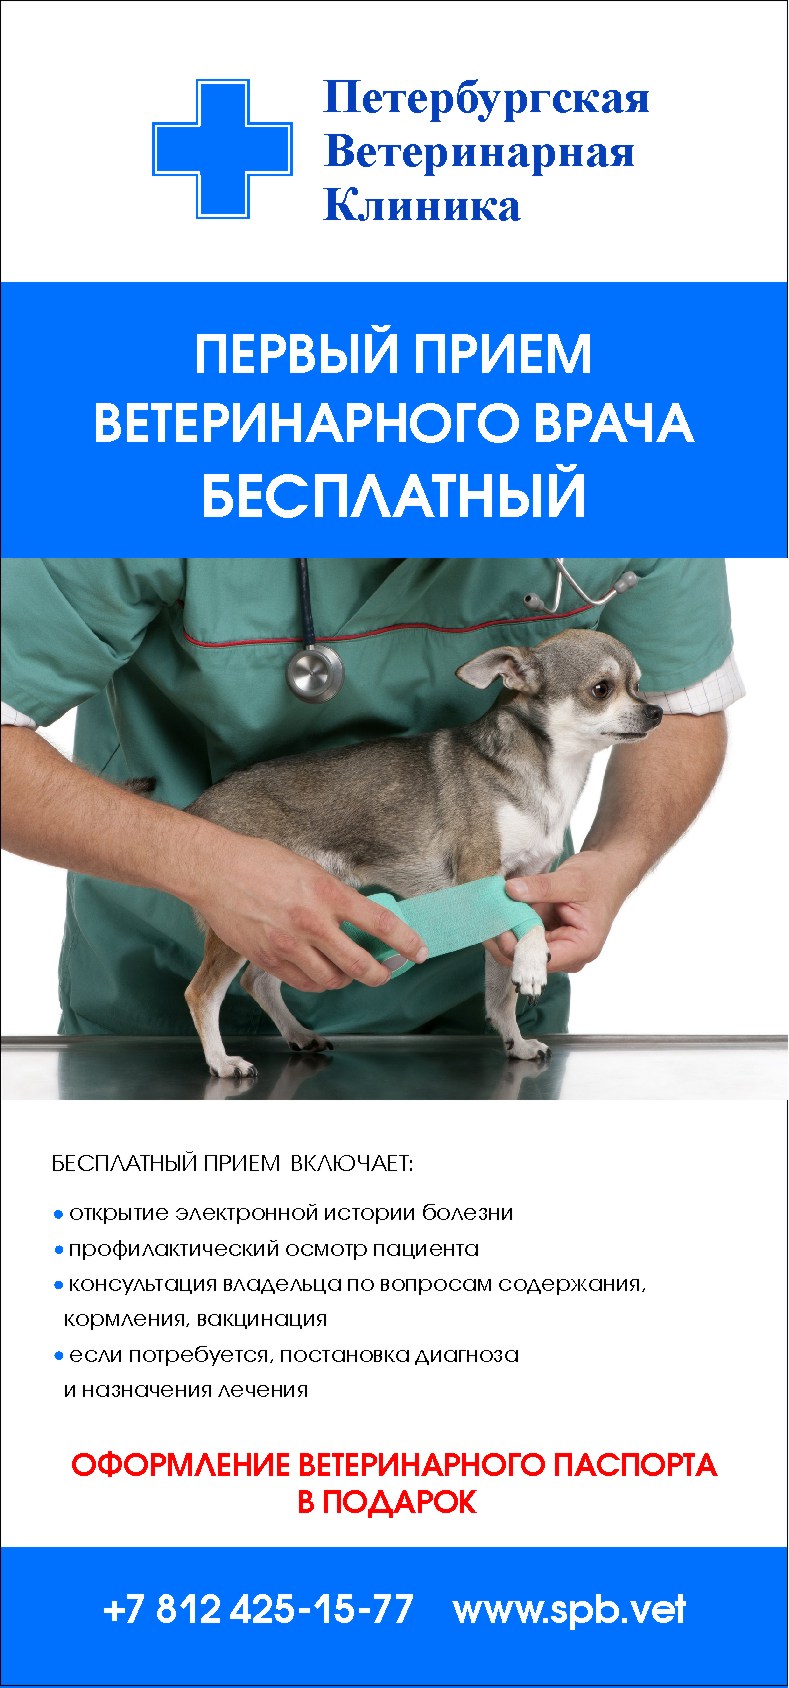 Первый прием ветеринарного врача бесплатный